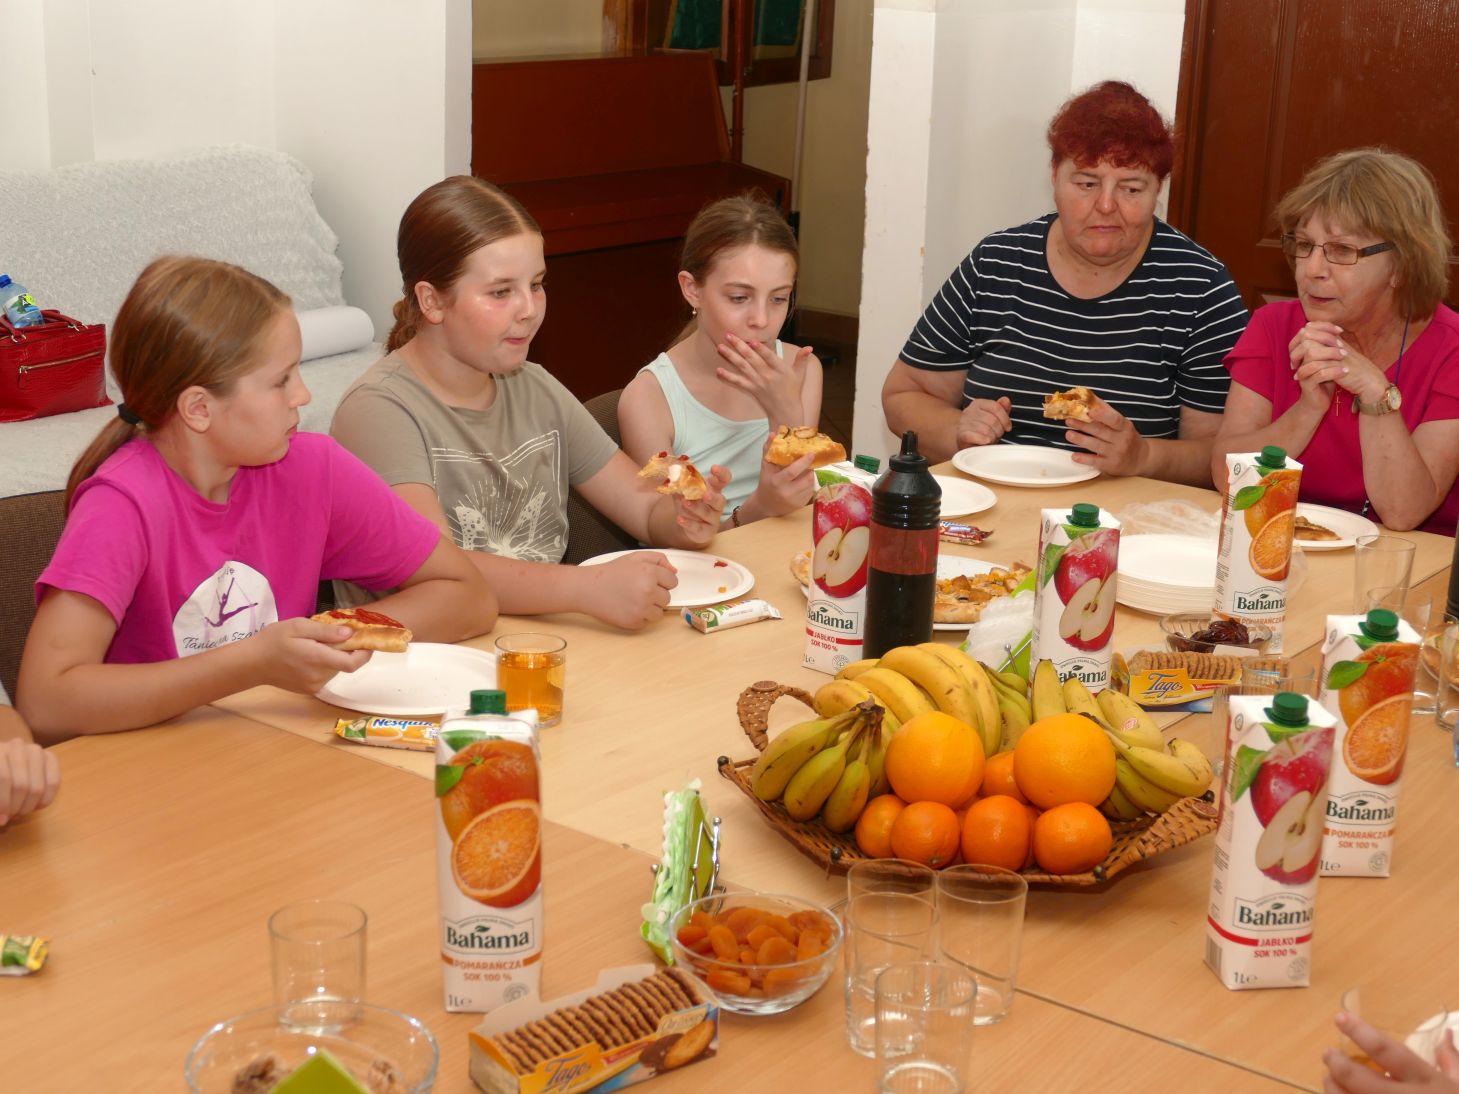 grupa młodych dziewczyn i dwie starsze kobiety siedzą przy stole i jedzą wspólnie